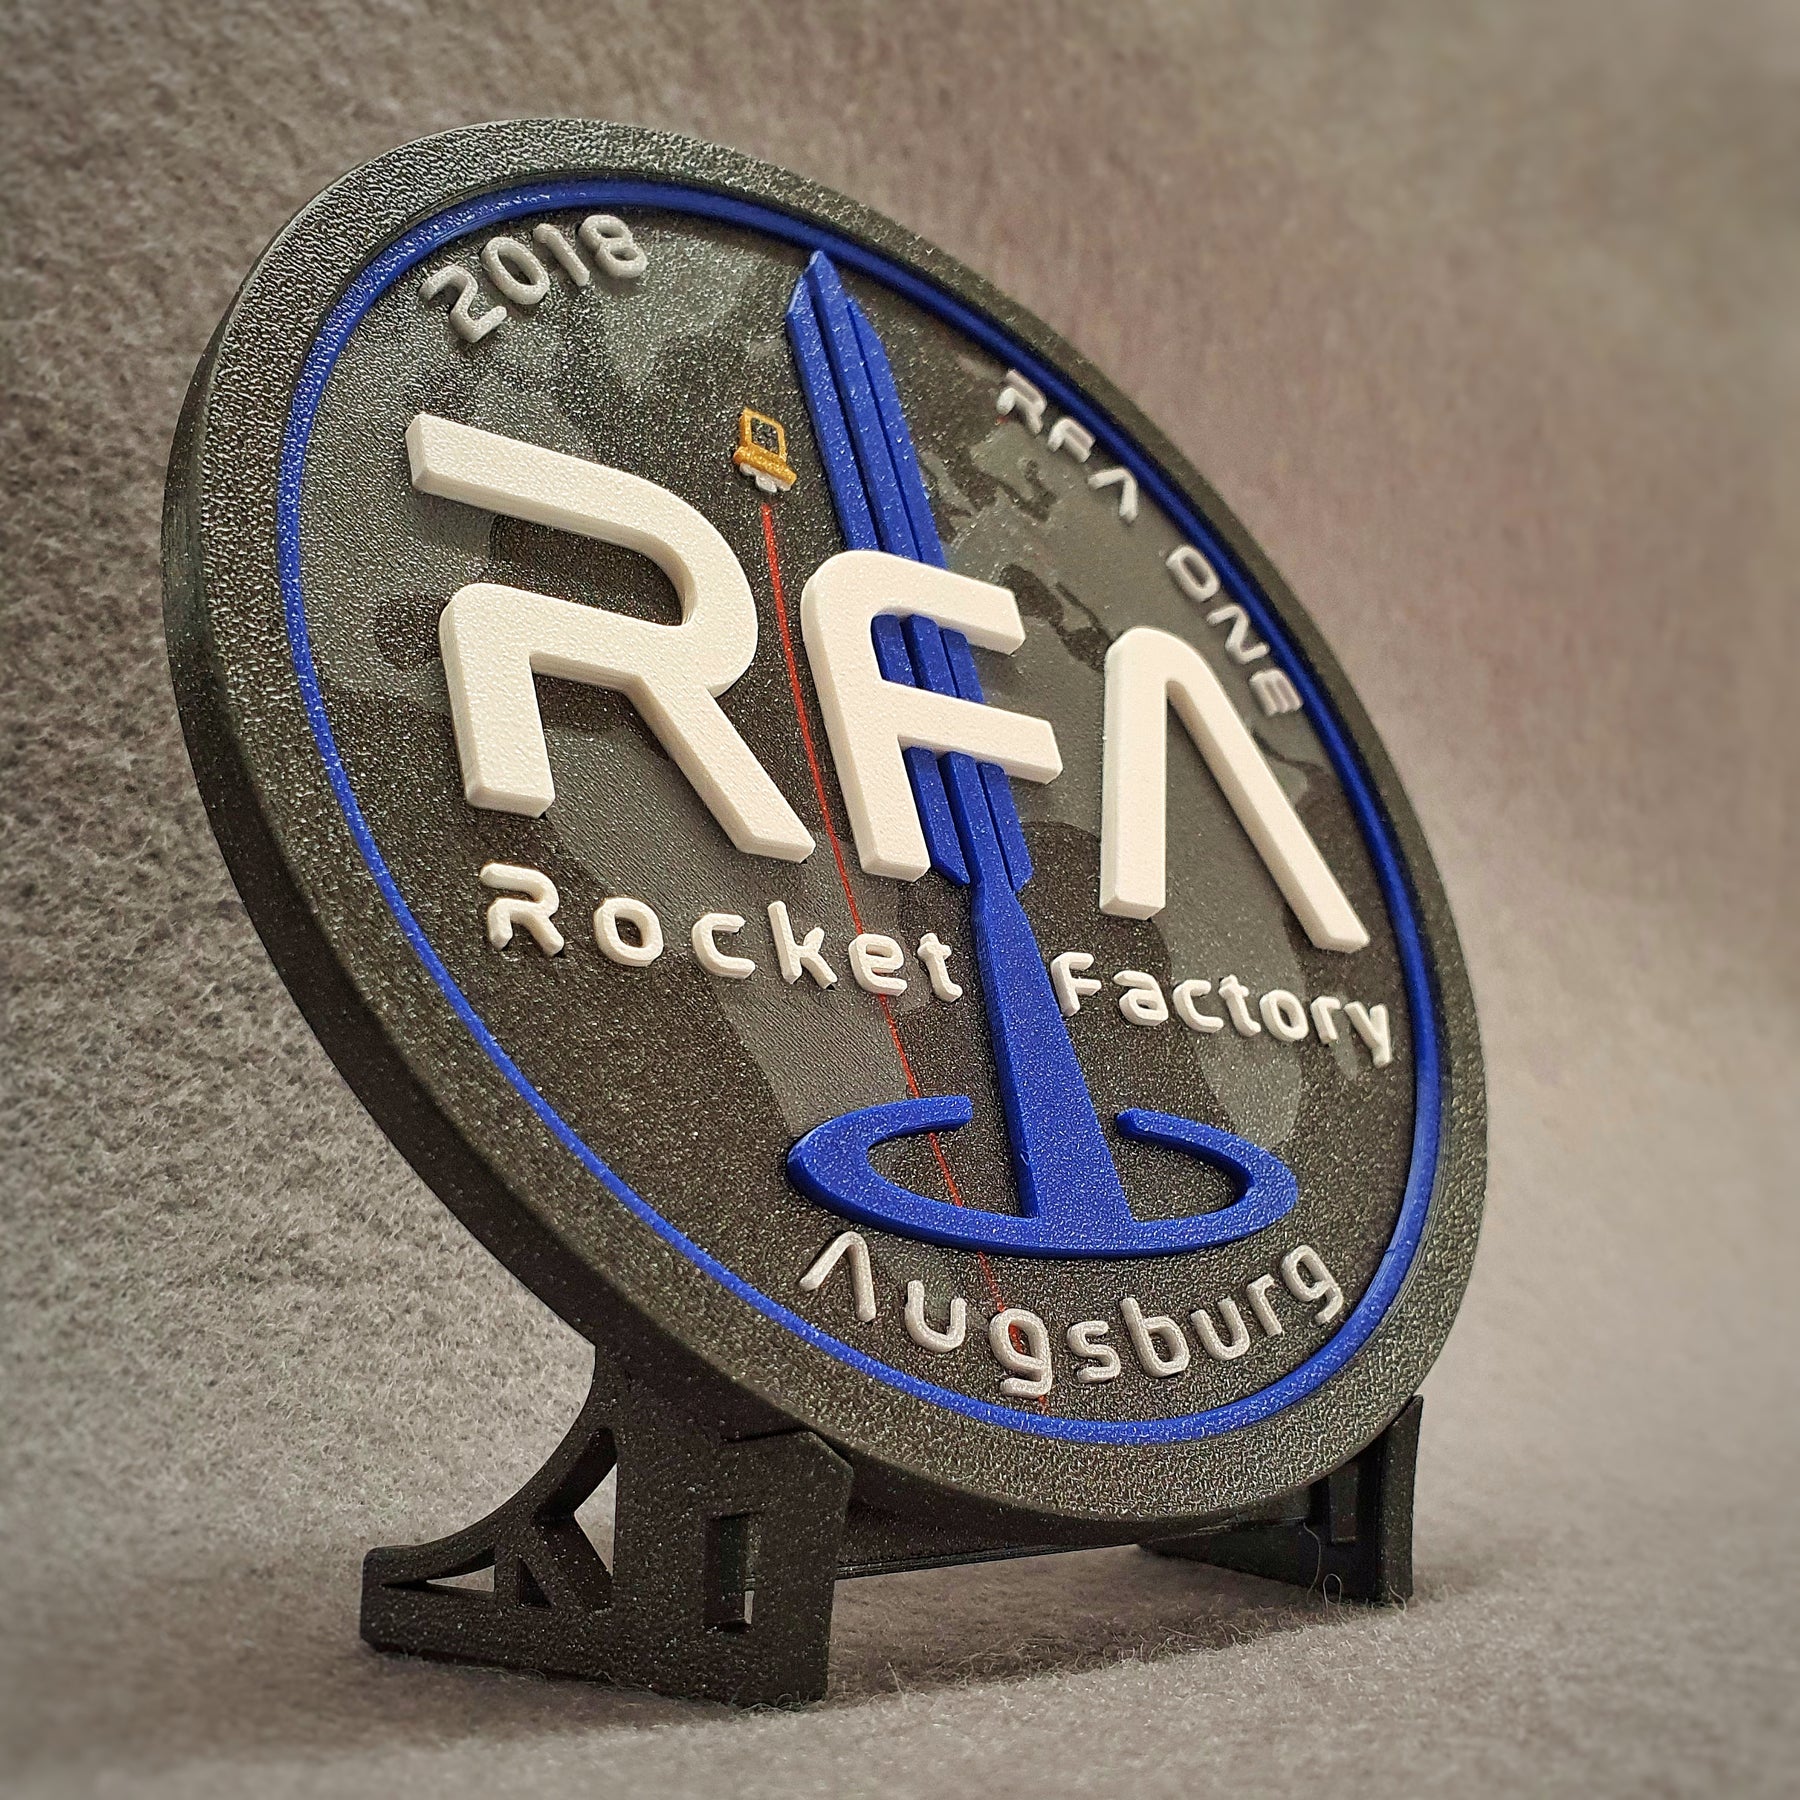 Rocket Factory Augsburg - Offizielles 3D-Druck Patch